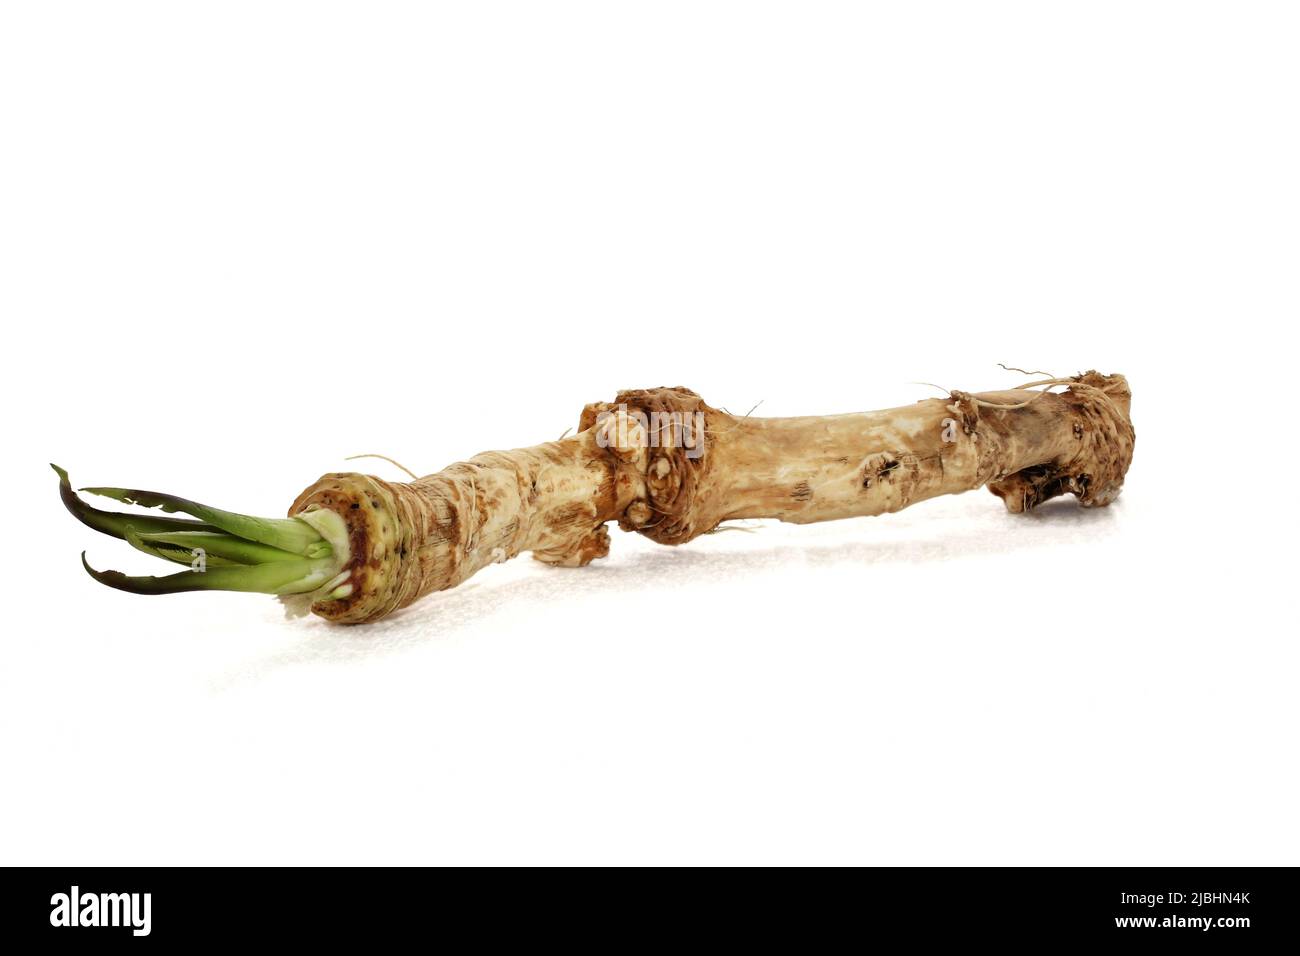 Full horseradish root isolated on white background Stock Photo